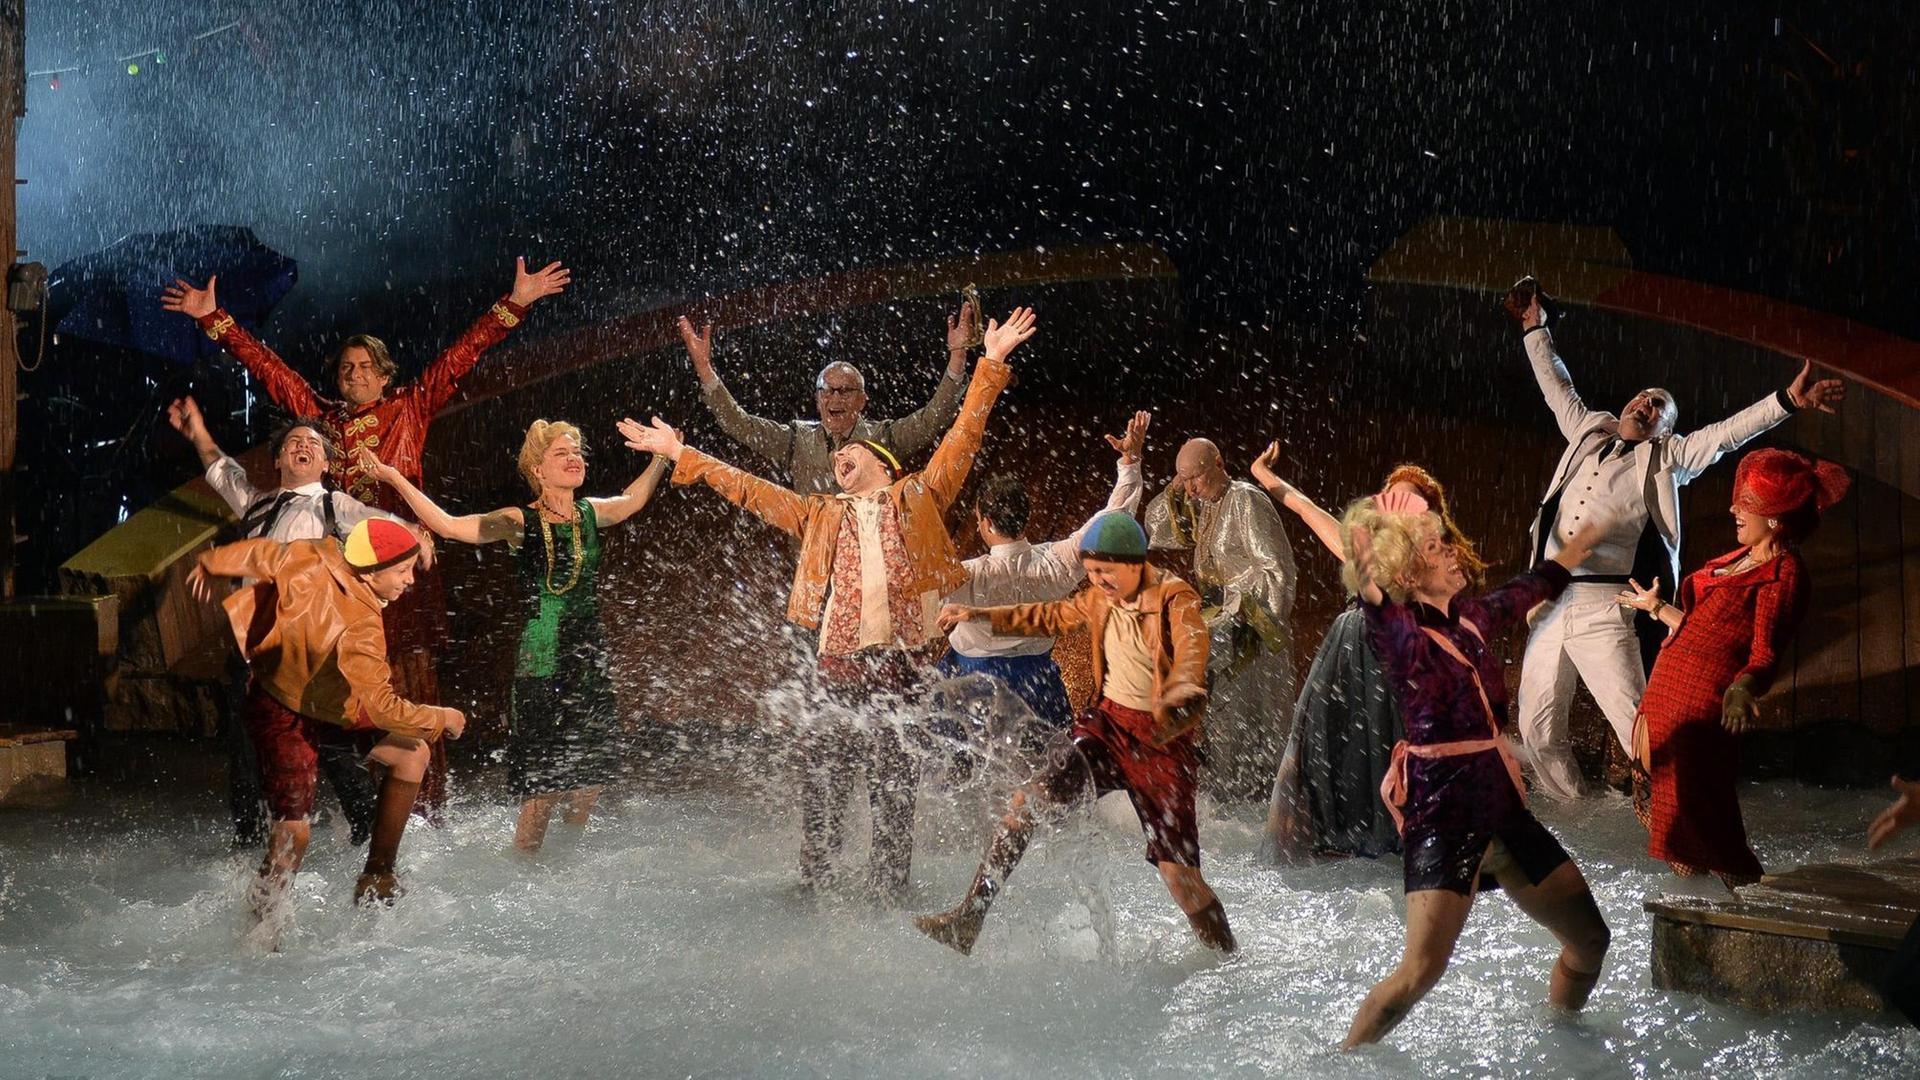 Schauspieler tanzen auf einer Bühne, deren Boden von Wasser bedeckt ist, Wasser spritzt in die Luft